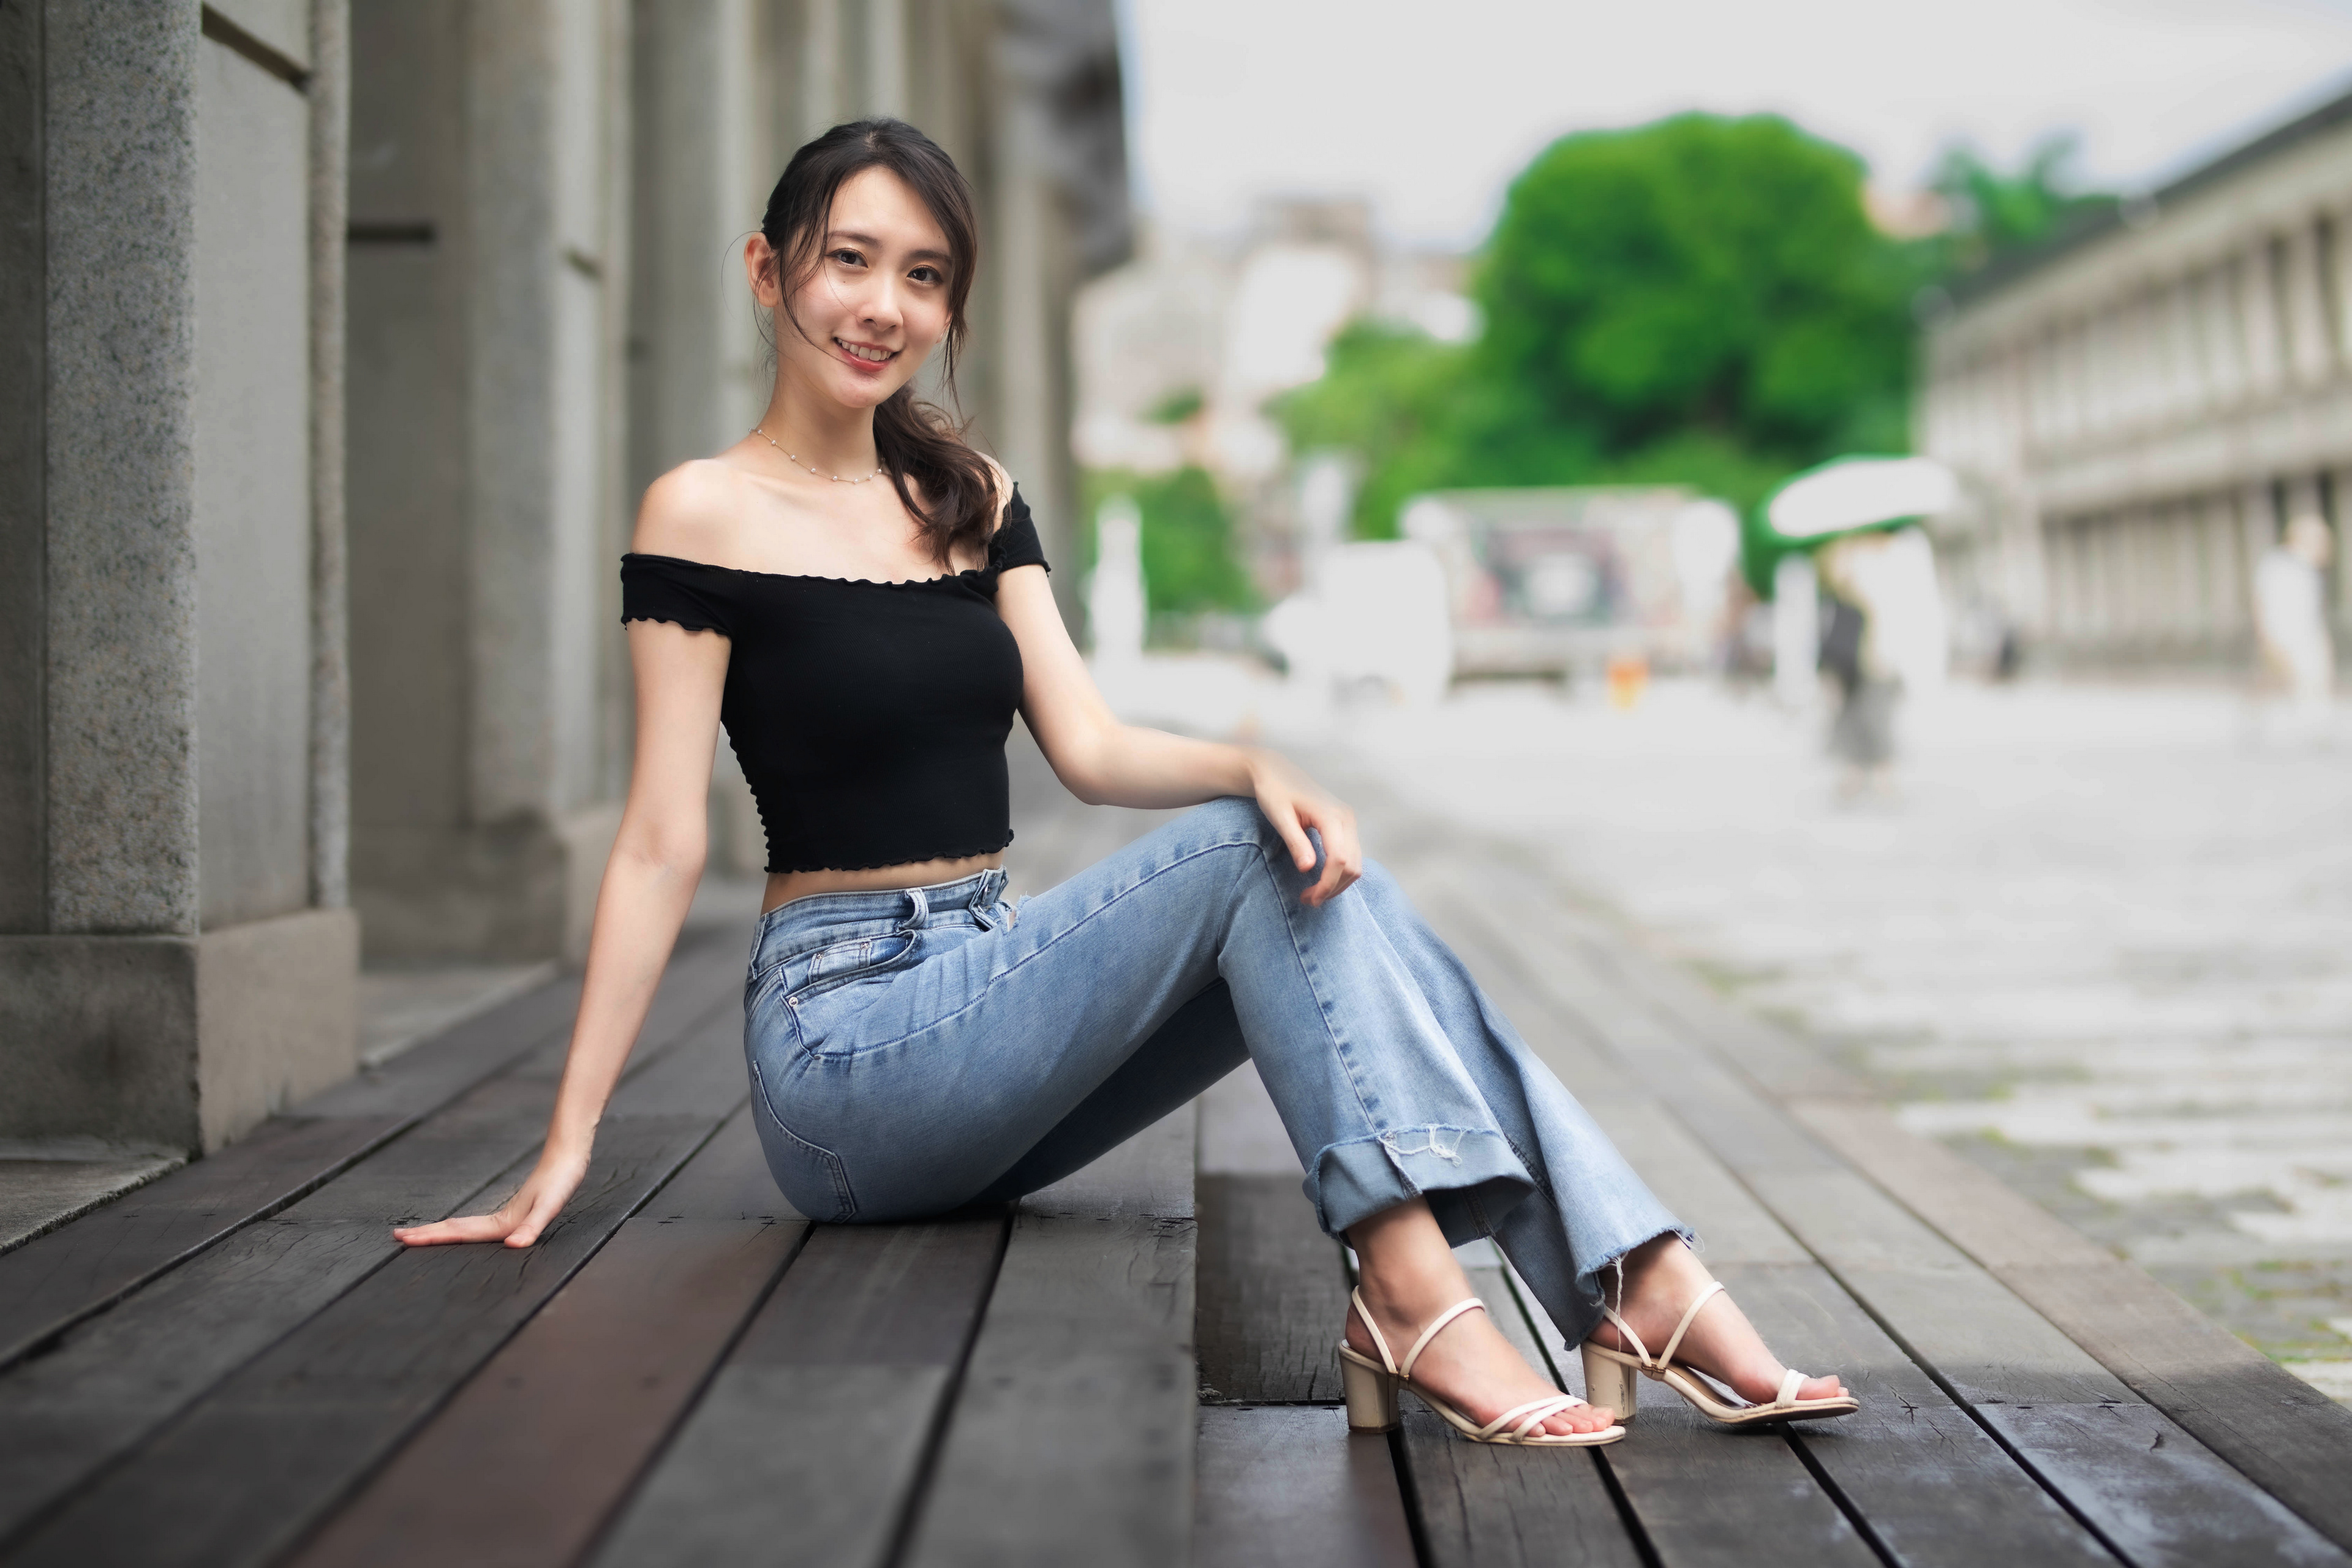 Asian Model Women Long Hair Dark Hair Sitting Brunette Jeans Smiling Black Top Bare Shoulders High H 3840x2560